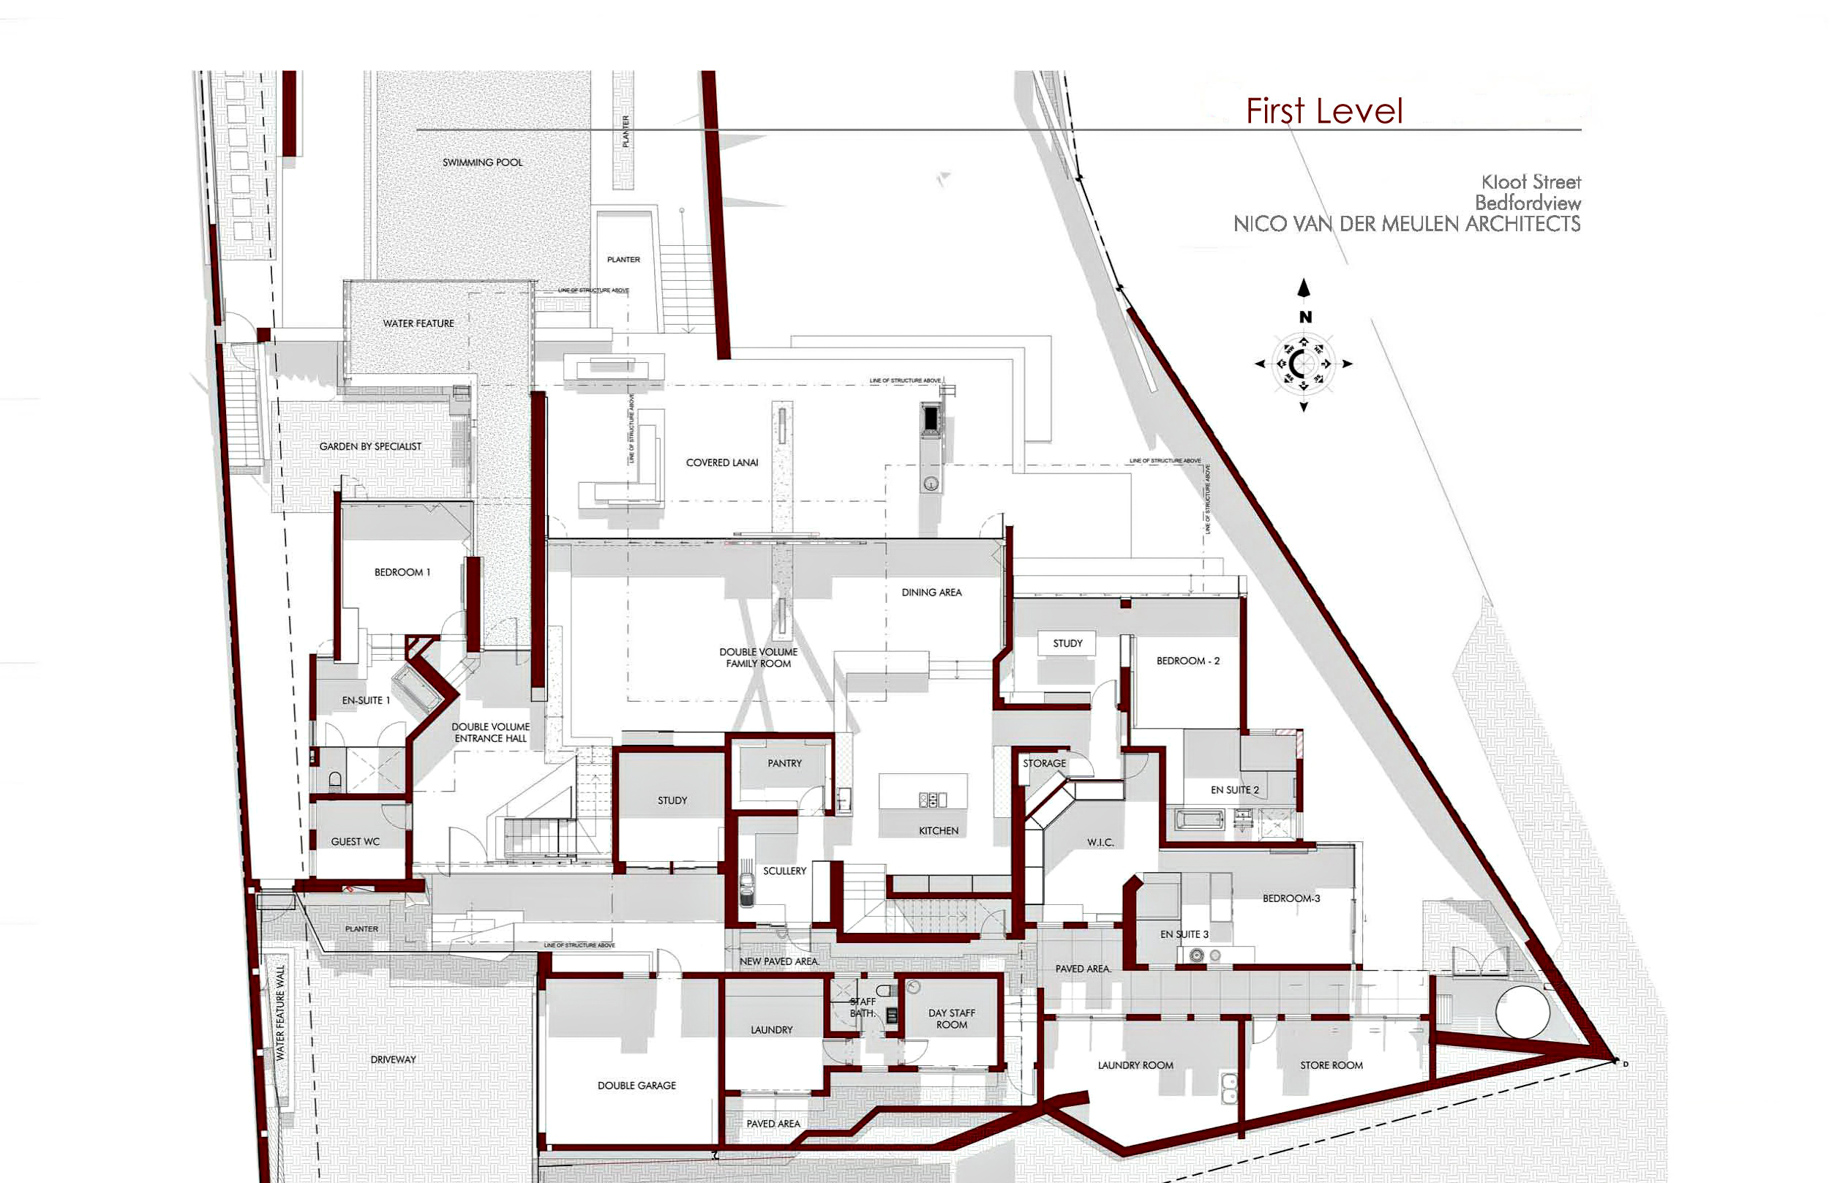 First Level Floor Plan – Kloof Ana House – Bedfordview, Gauteng, South Africa